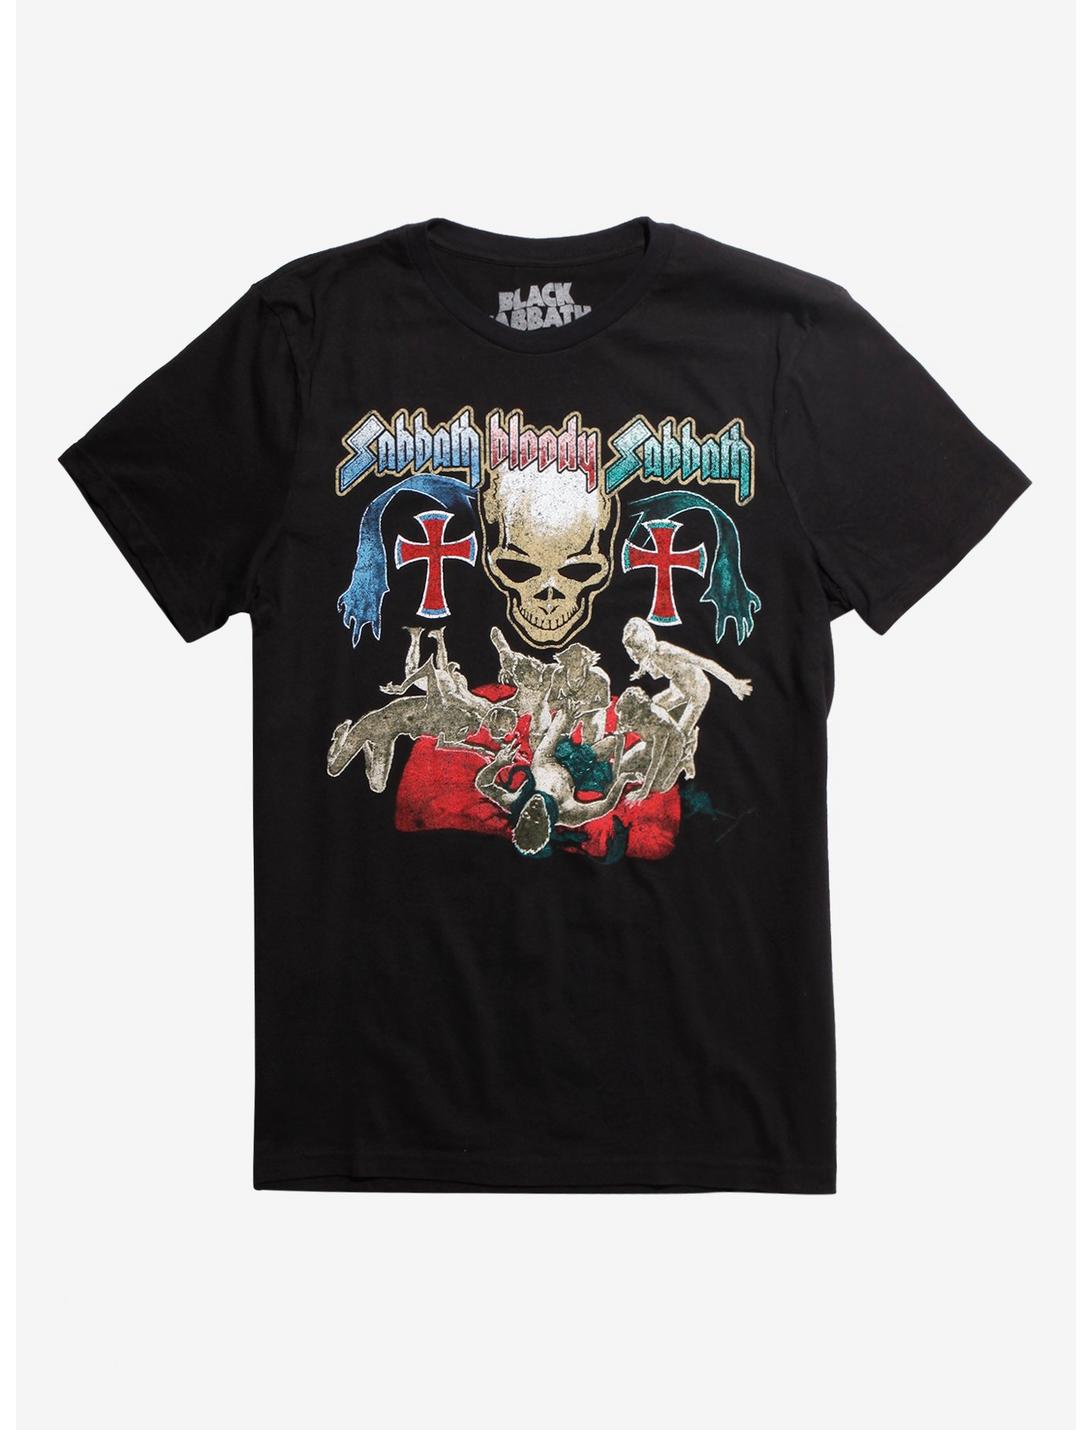 Black Sabbath Tour 1978 T-Shirt, BLACK, hi-res